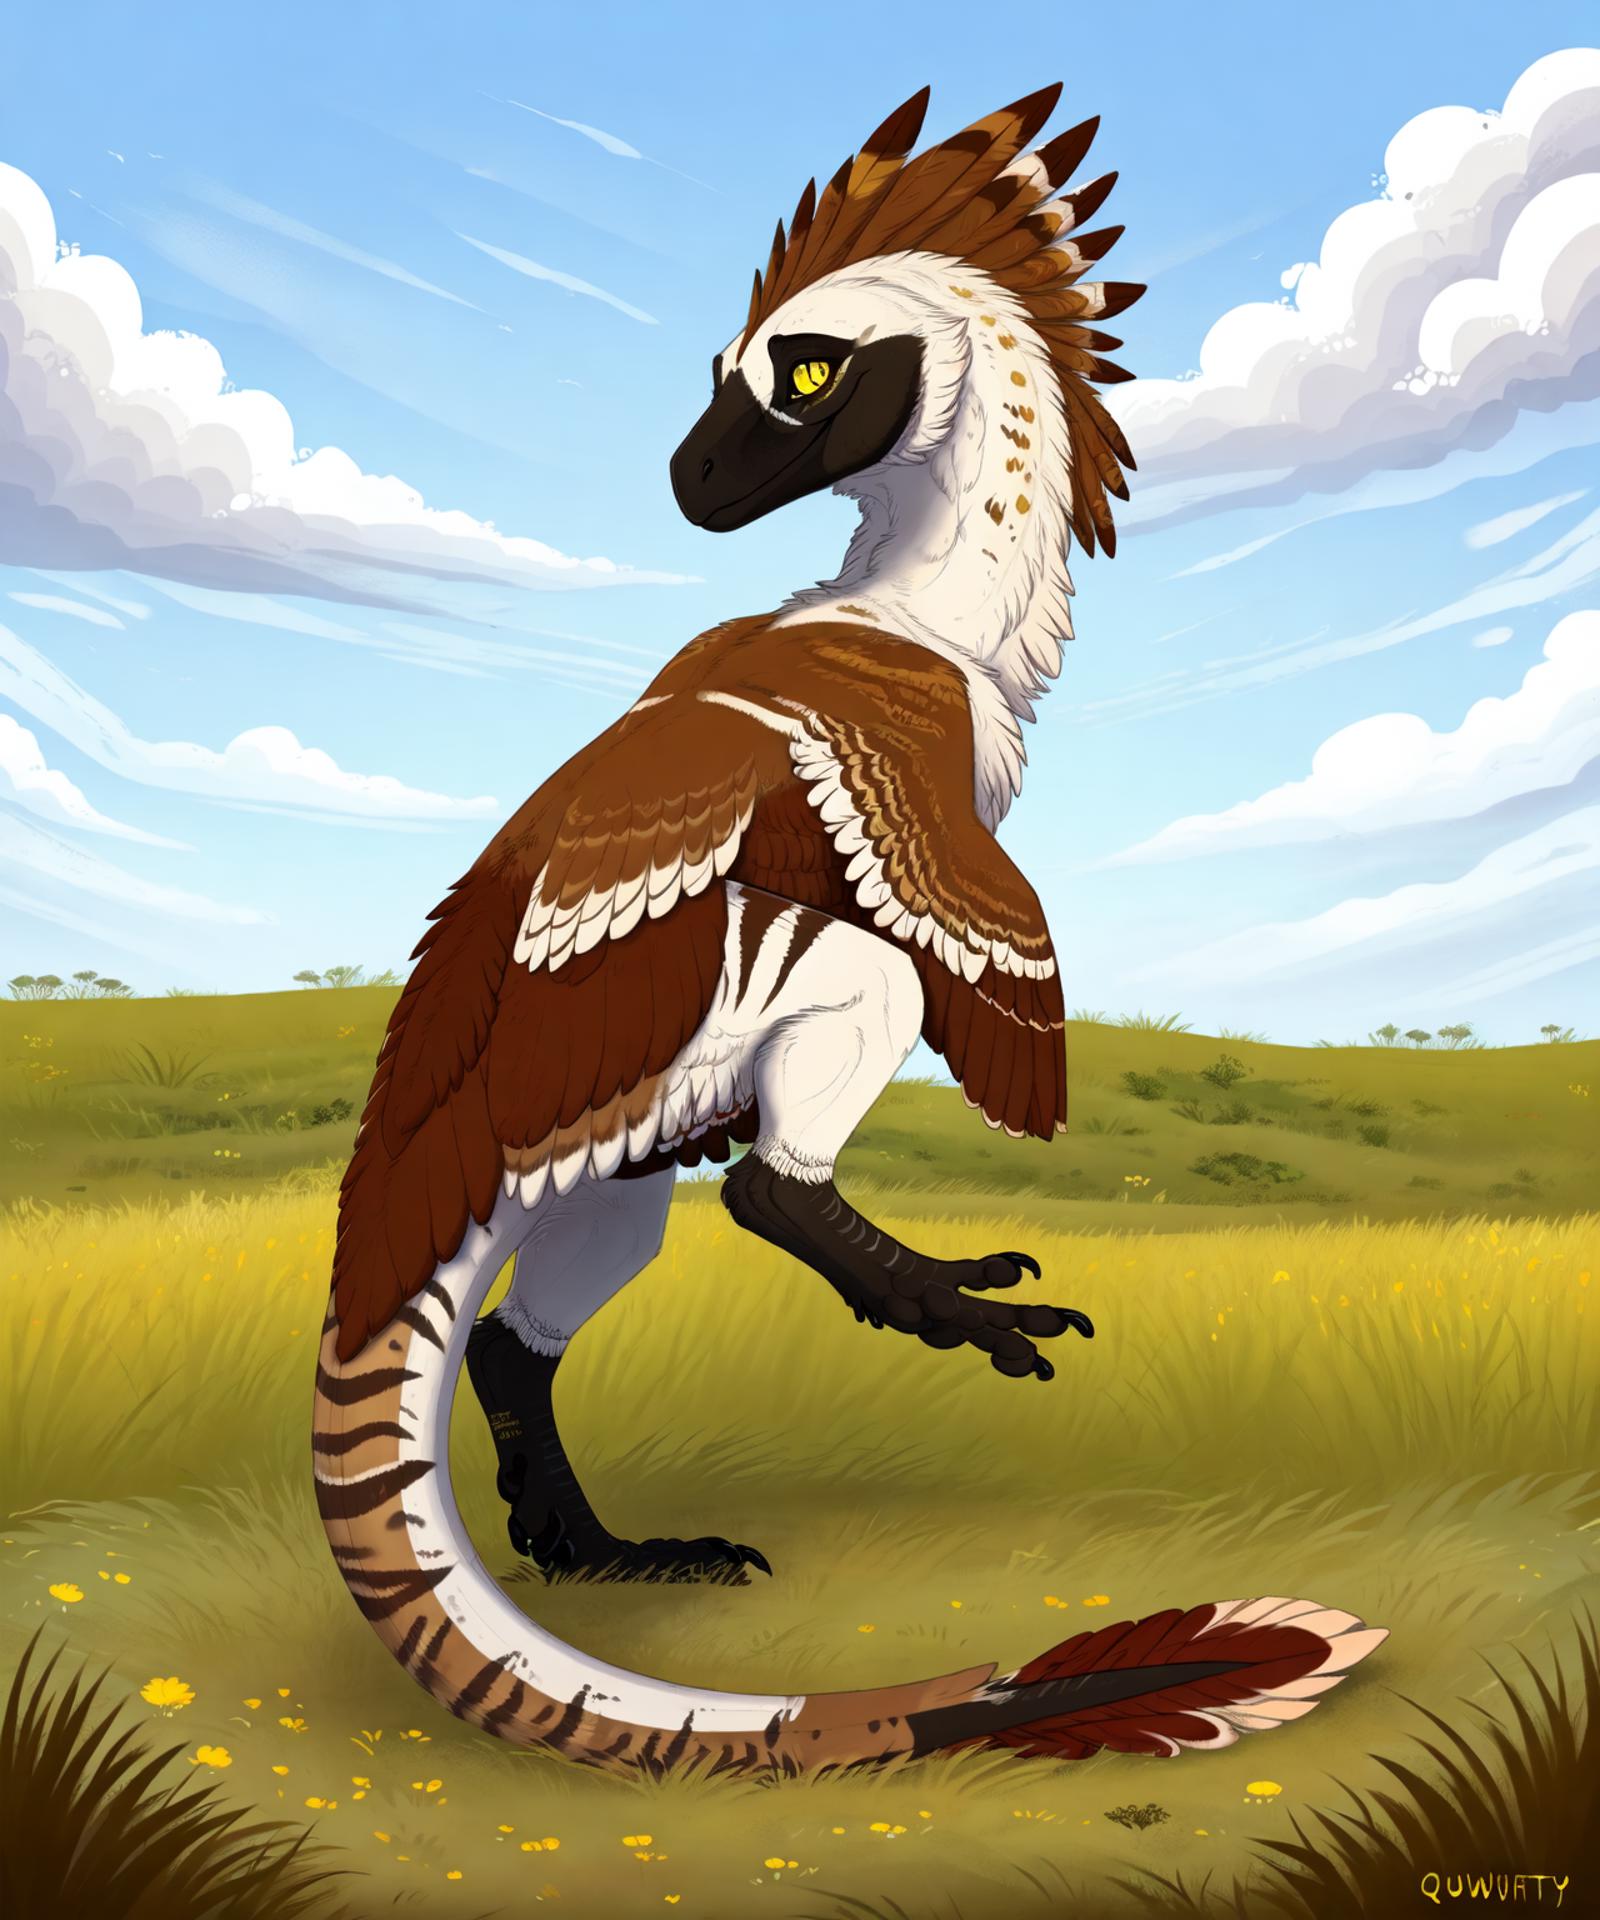 Dromaeosauridae image by NoBotherPls